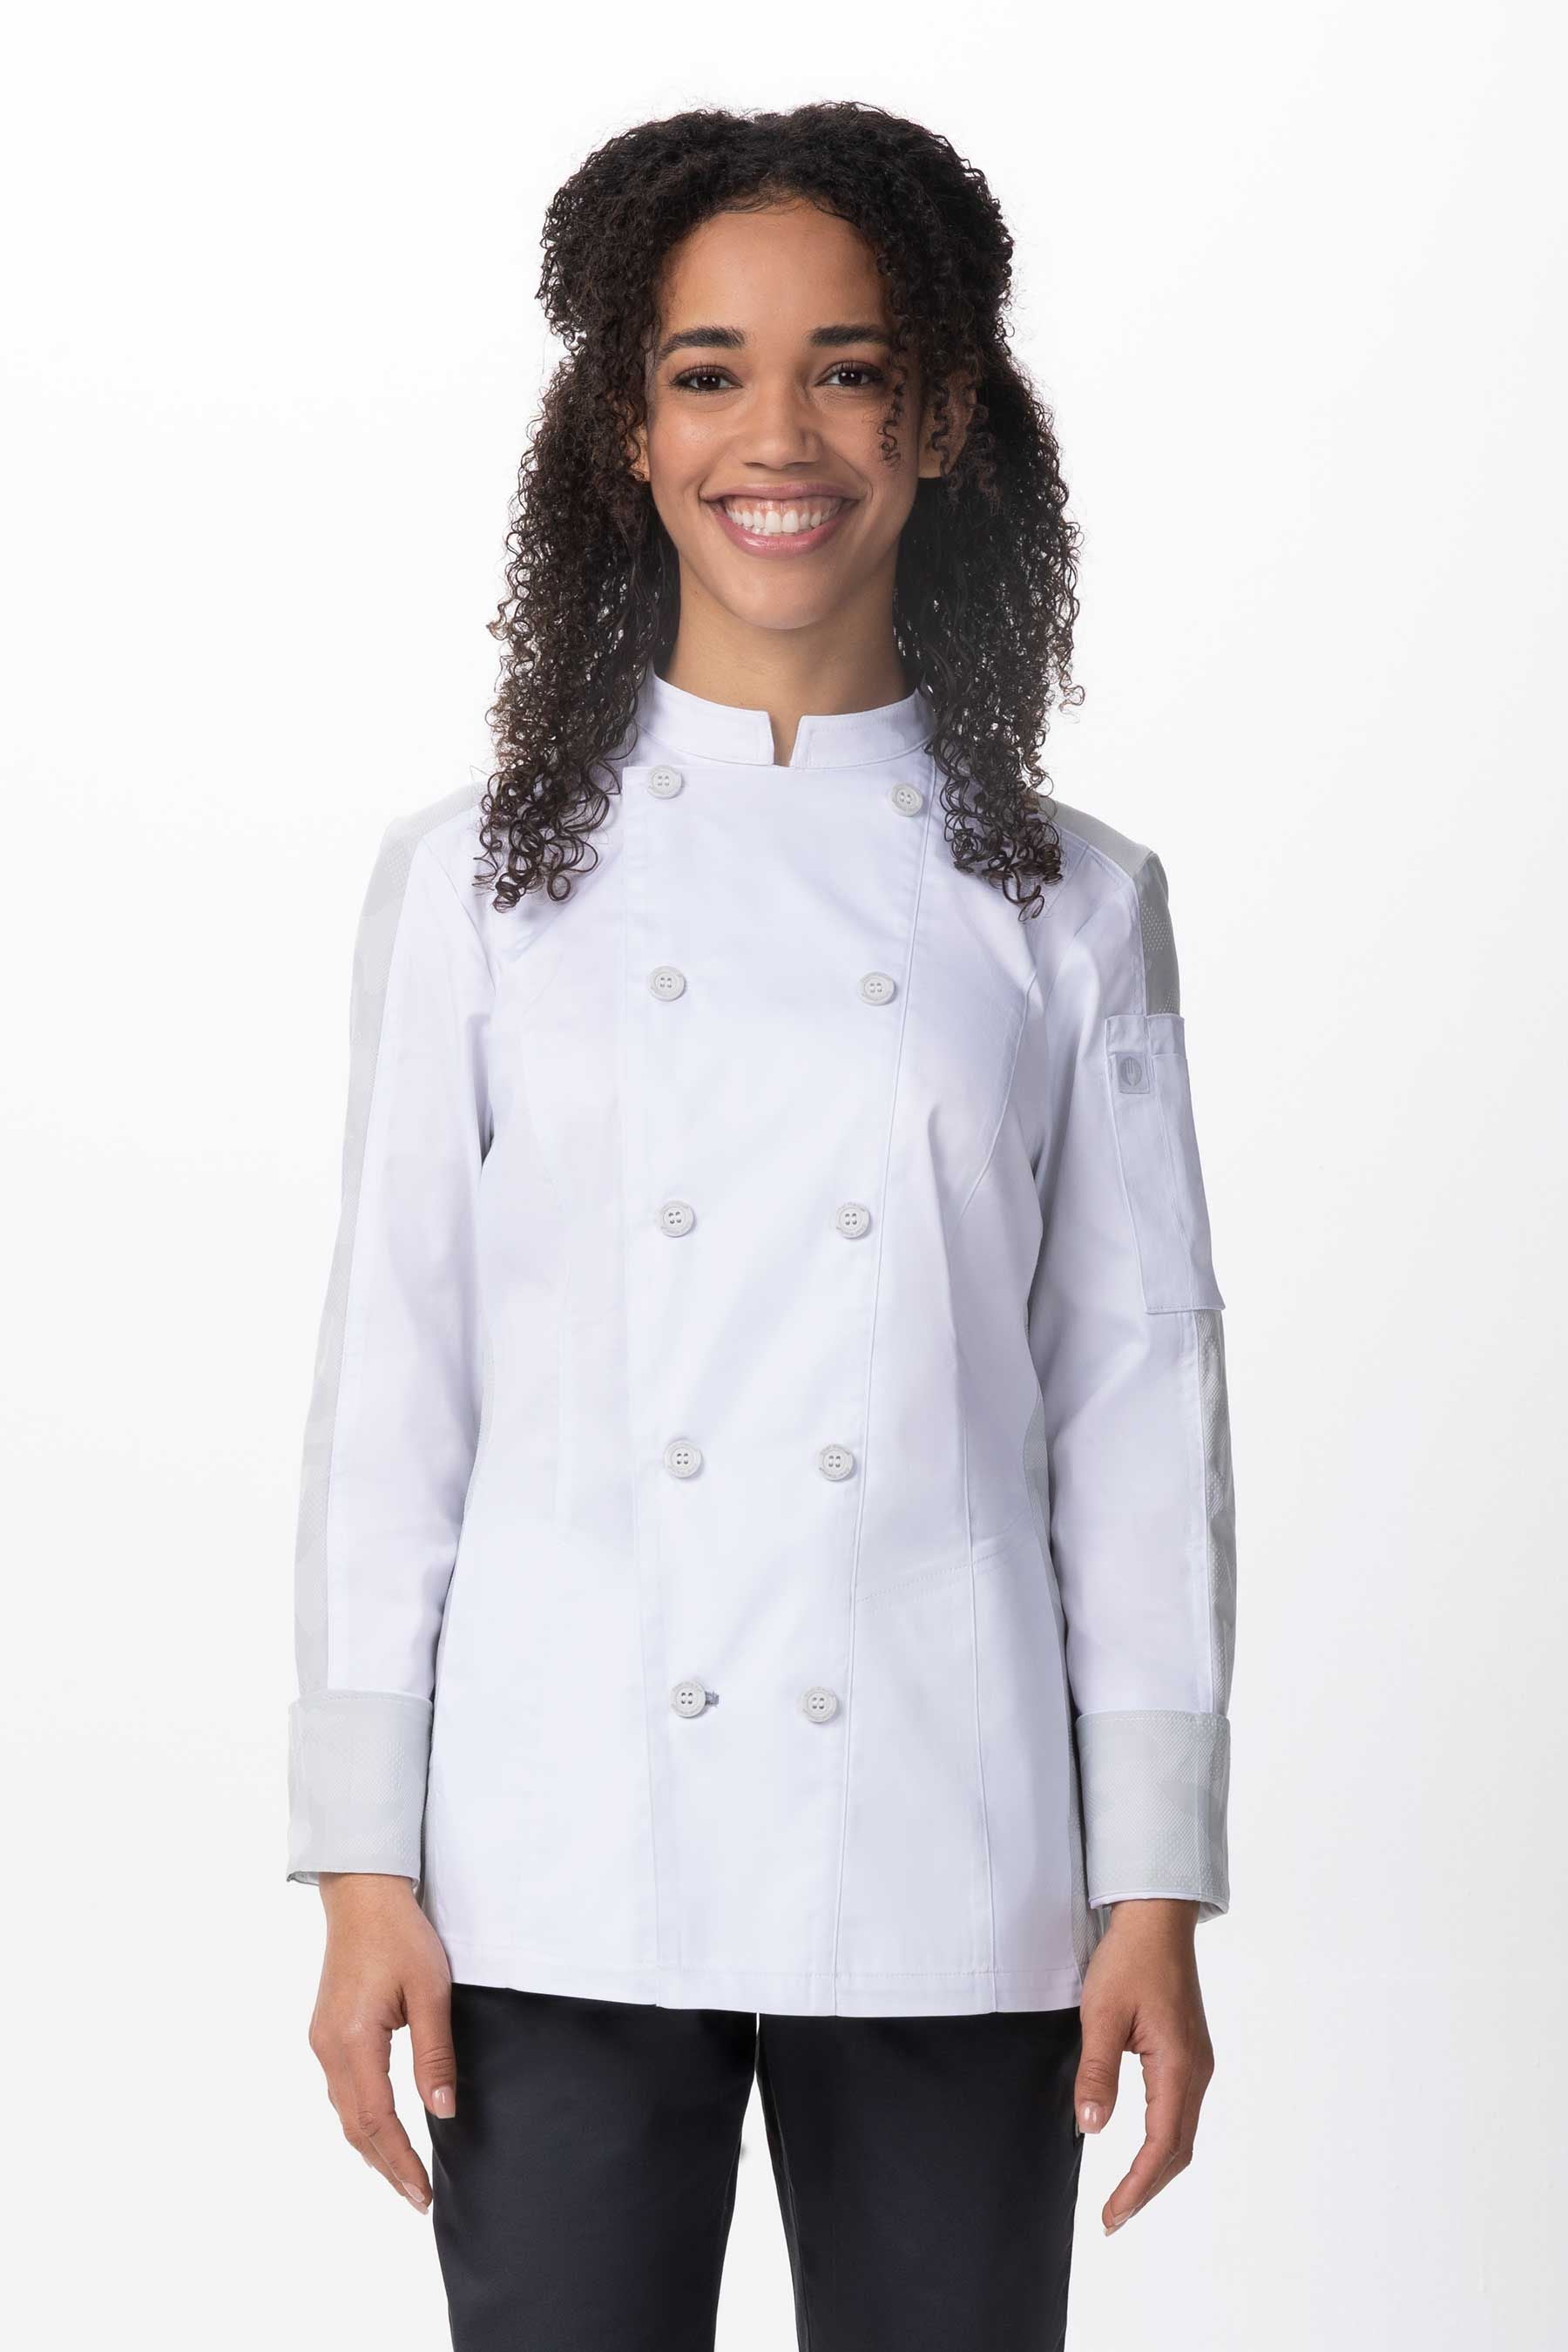 Mojave Female Chef Coat